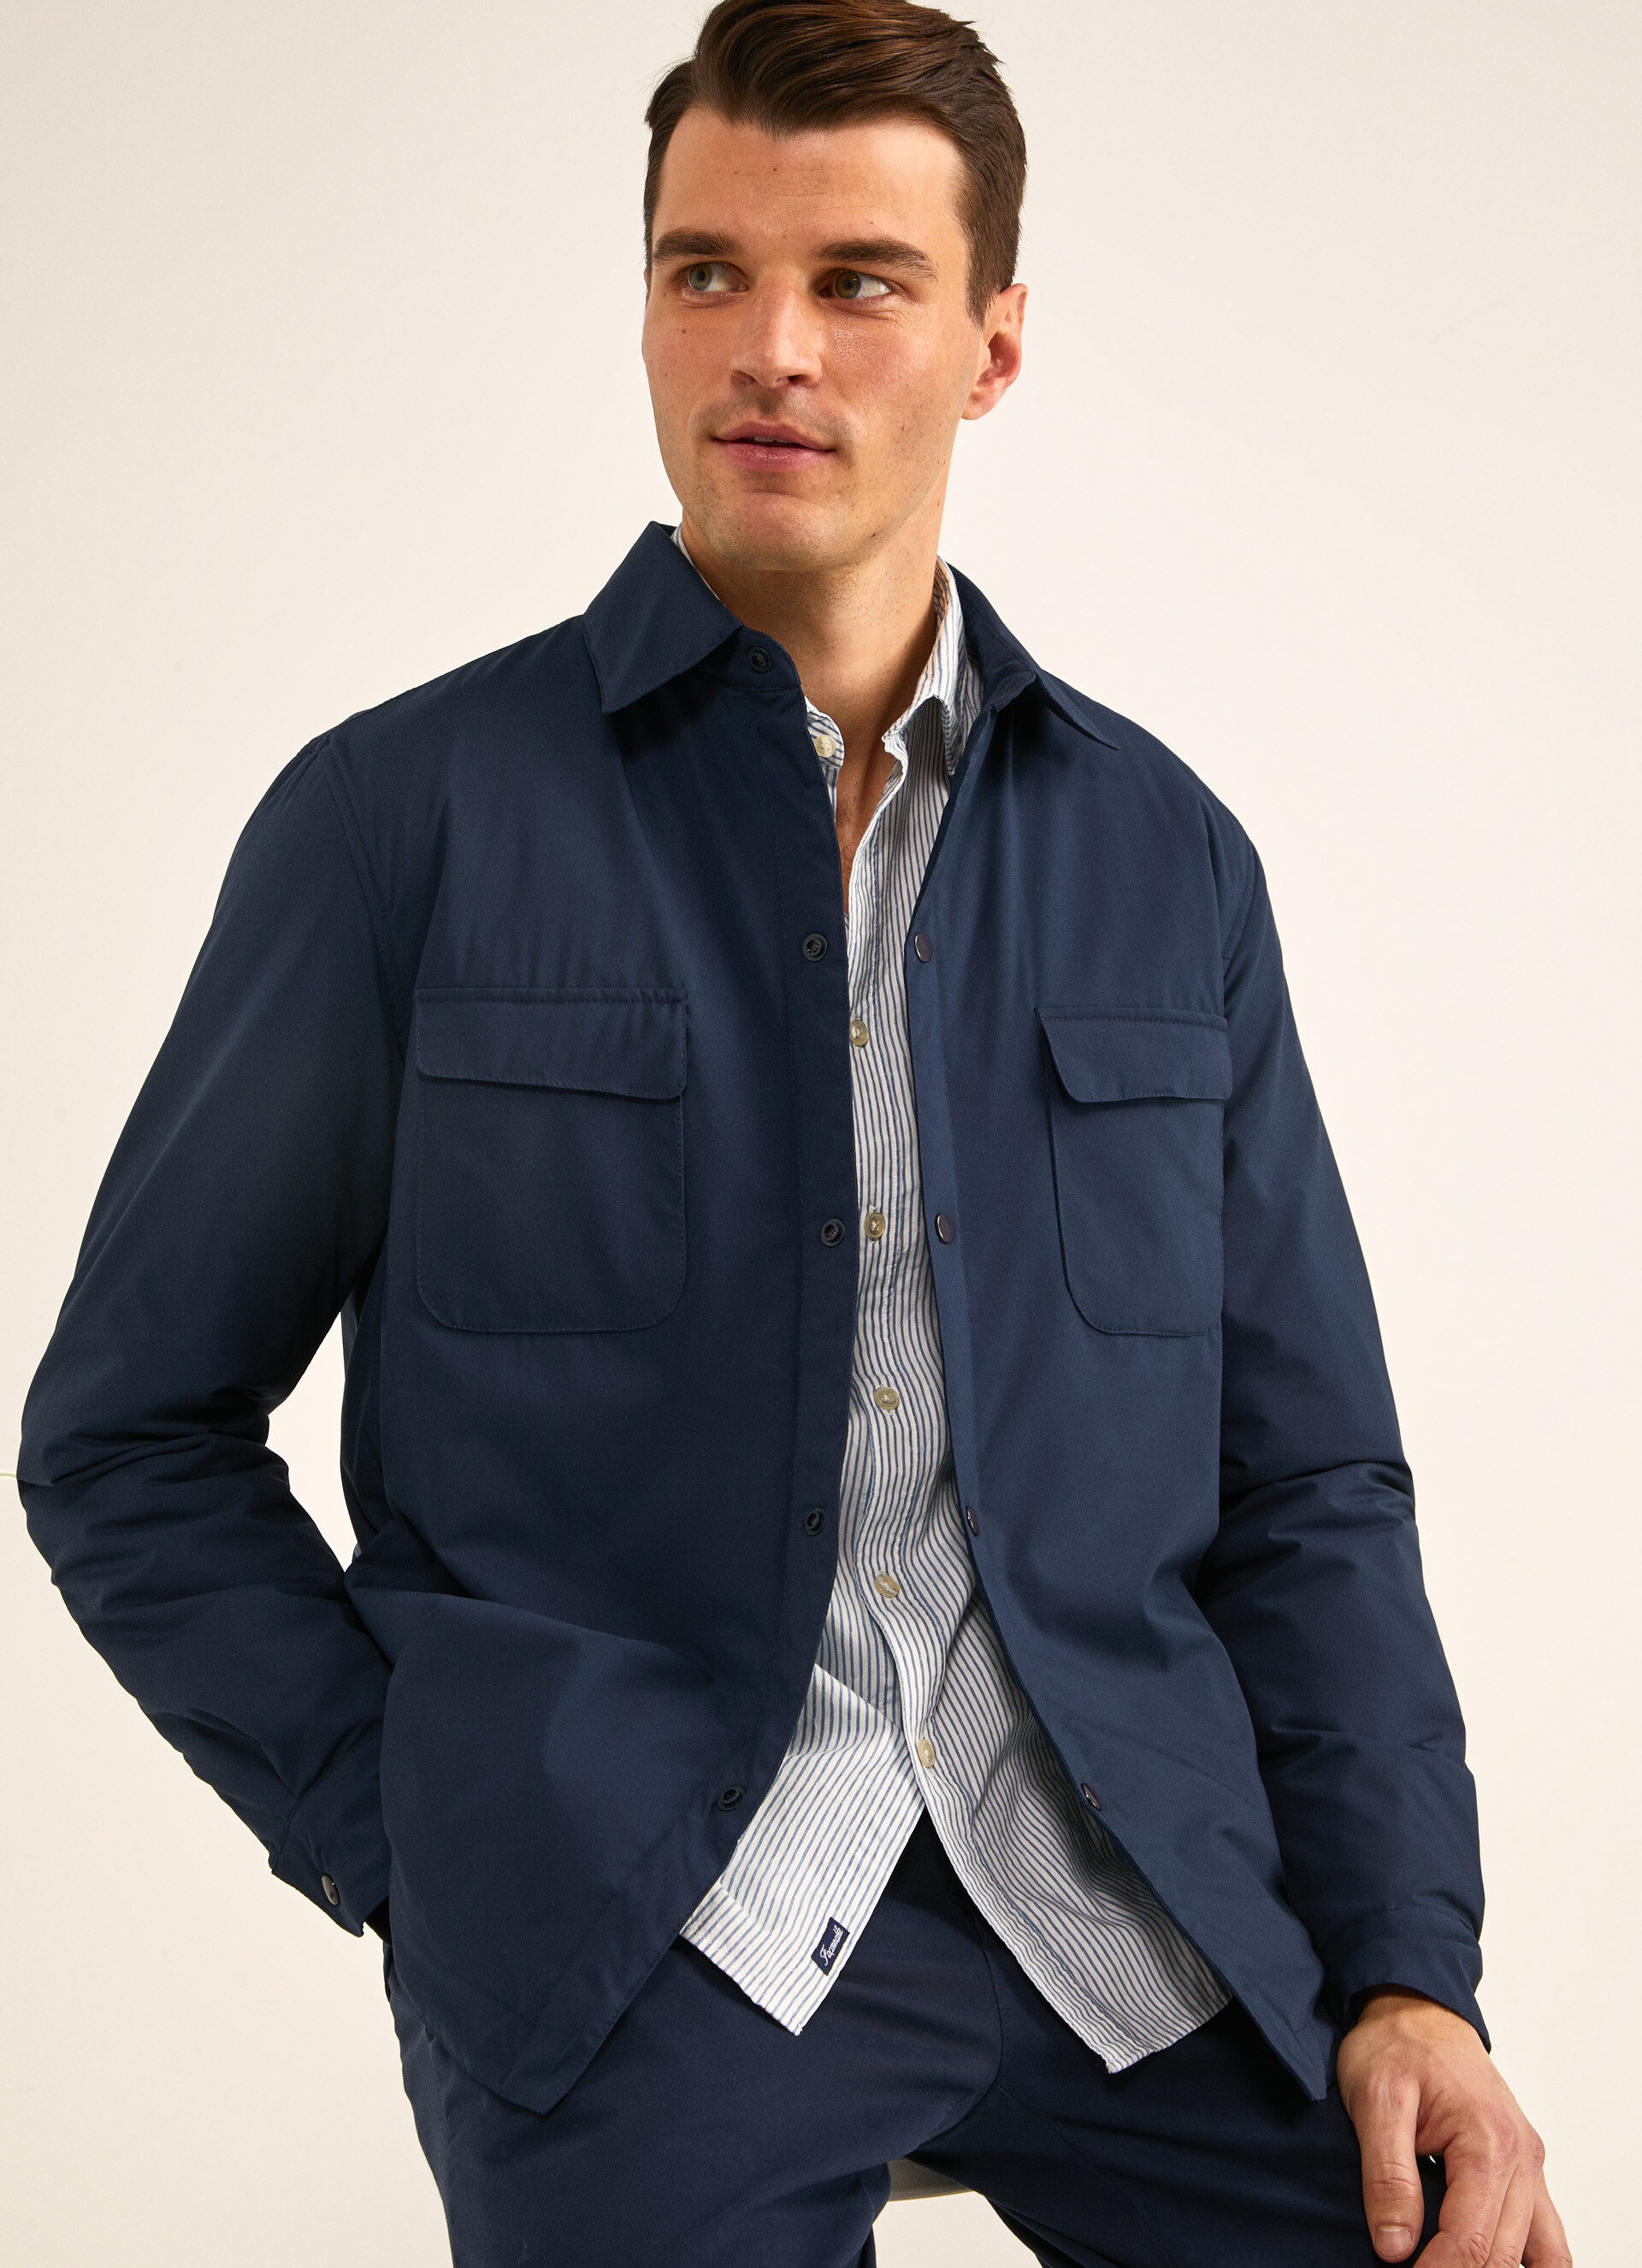 Explore the Men's Jackets & Blazers Collection | Façonnable